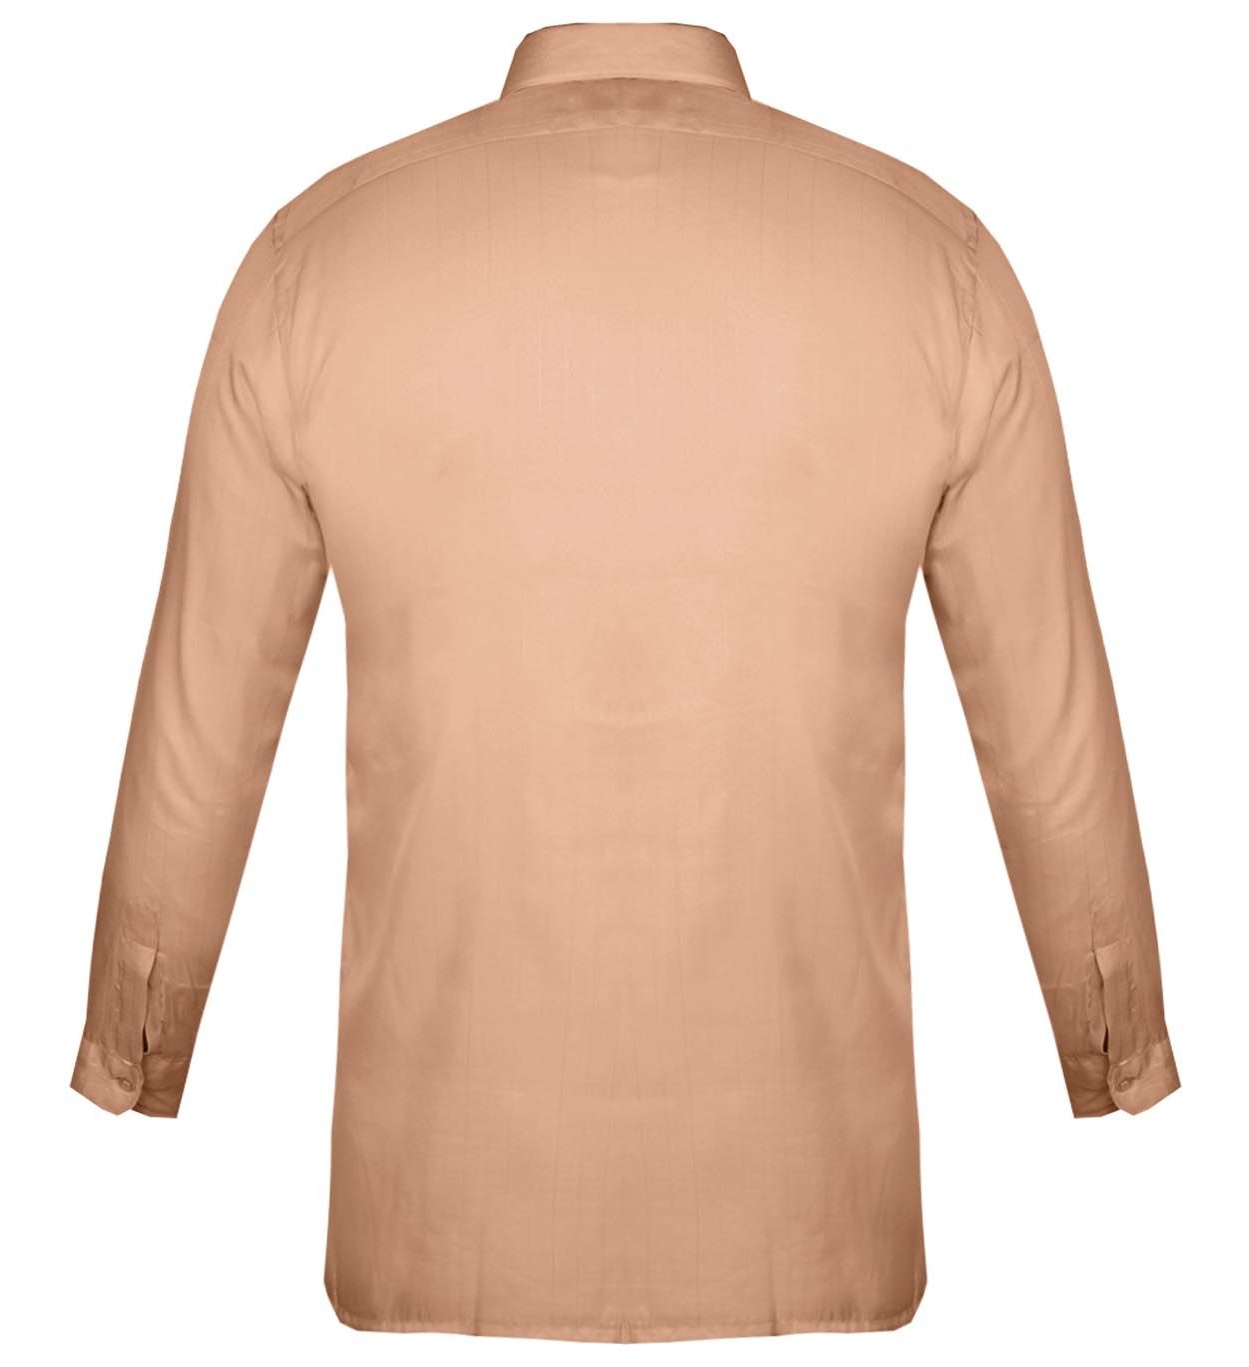 پیراهن مردانه کد PM004 رنگ آجری